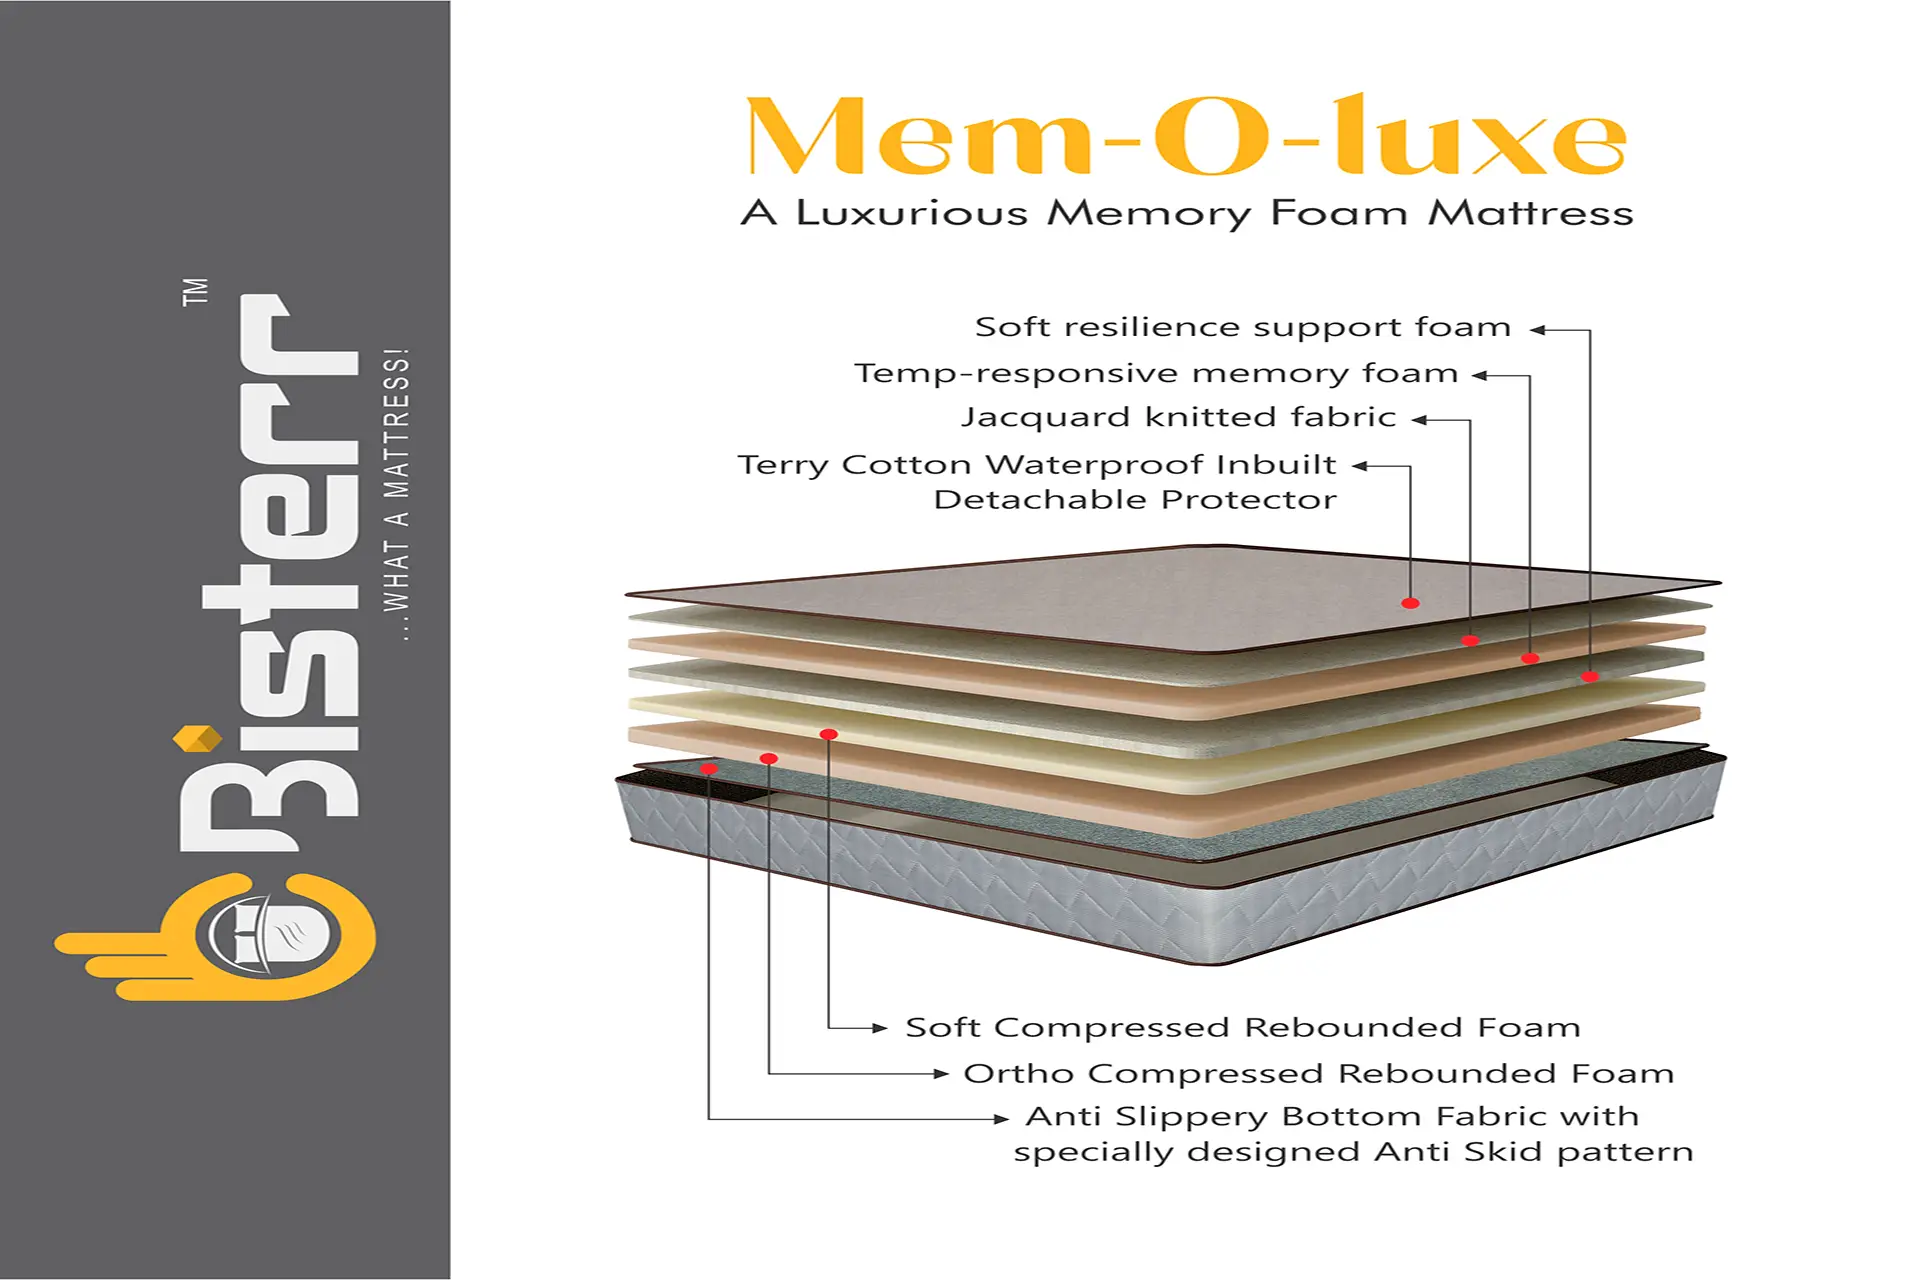 MEM-O-LUXE A Luxurious Memory Foam Mattress